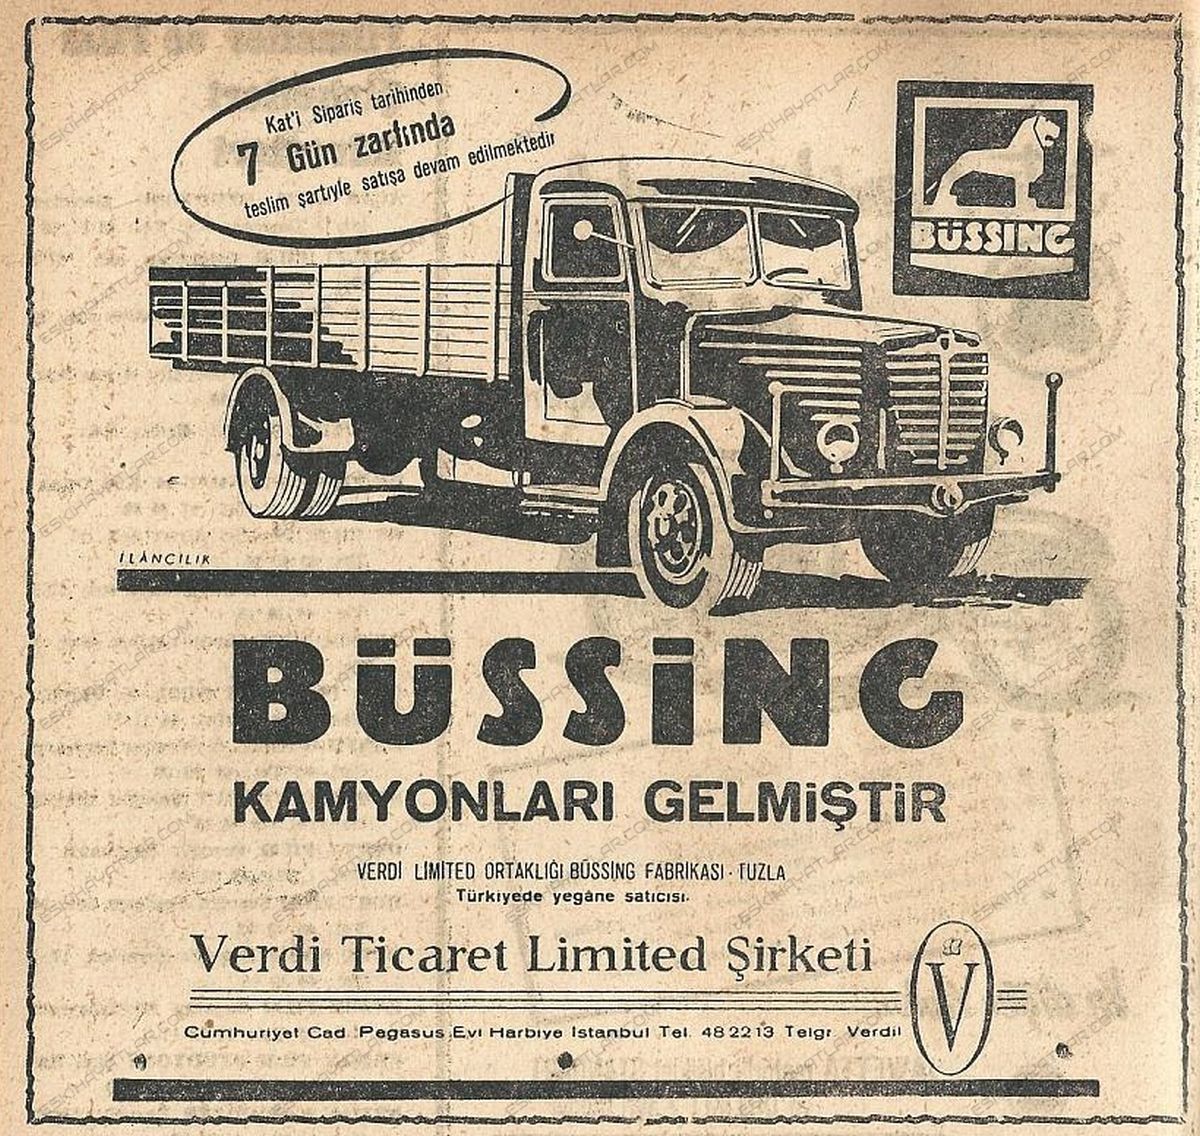 0404-verdi-ticaret-limited-sirketi-1960-bussing-kamyon-reklami